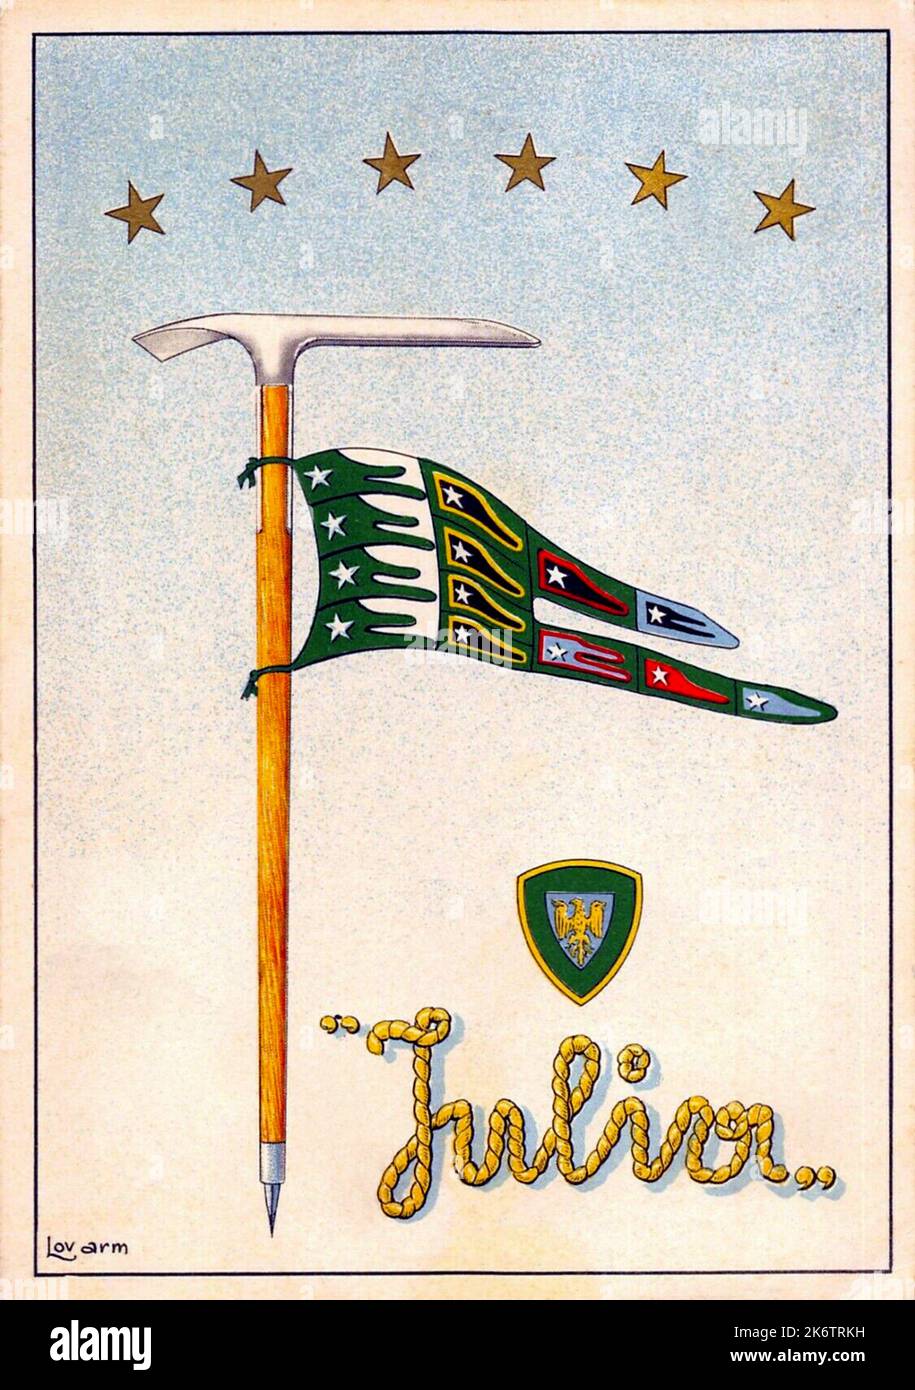 60er Jahre Ca , ITALIEN : Eine Gedenkpostkarte für italienische Militär-ALPINI-Soldaten der BATTAGLIONE JULIA (Friaul Julisch Venetien) . Kunstwerk von unbekannt signiert Lov. Arm. - ALPINO - ALPINE - ALPINI - CARTOLINA POSTALE - miliari soldati italiani - GESCHICHTE - FOTO STORICHE - ILLUSTRATION - picozza - Eispickel - Flagge - bandiera --- Archivio GBB Stockfoto